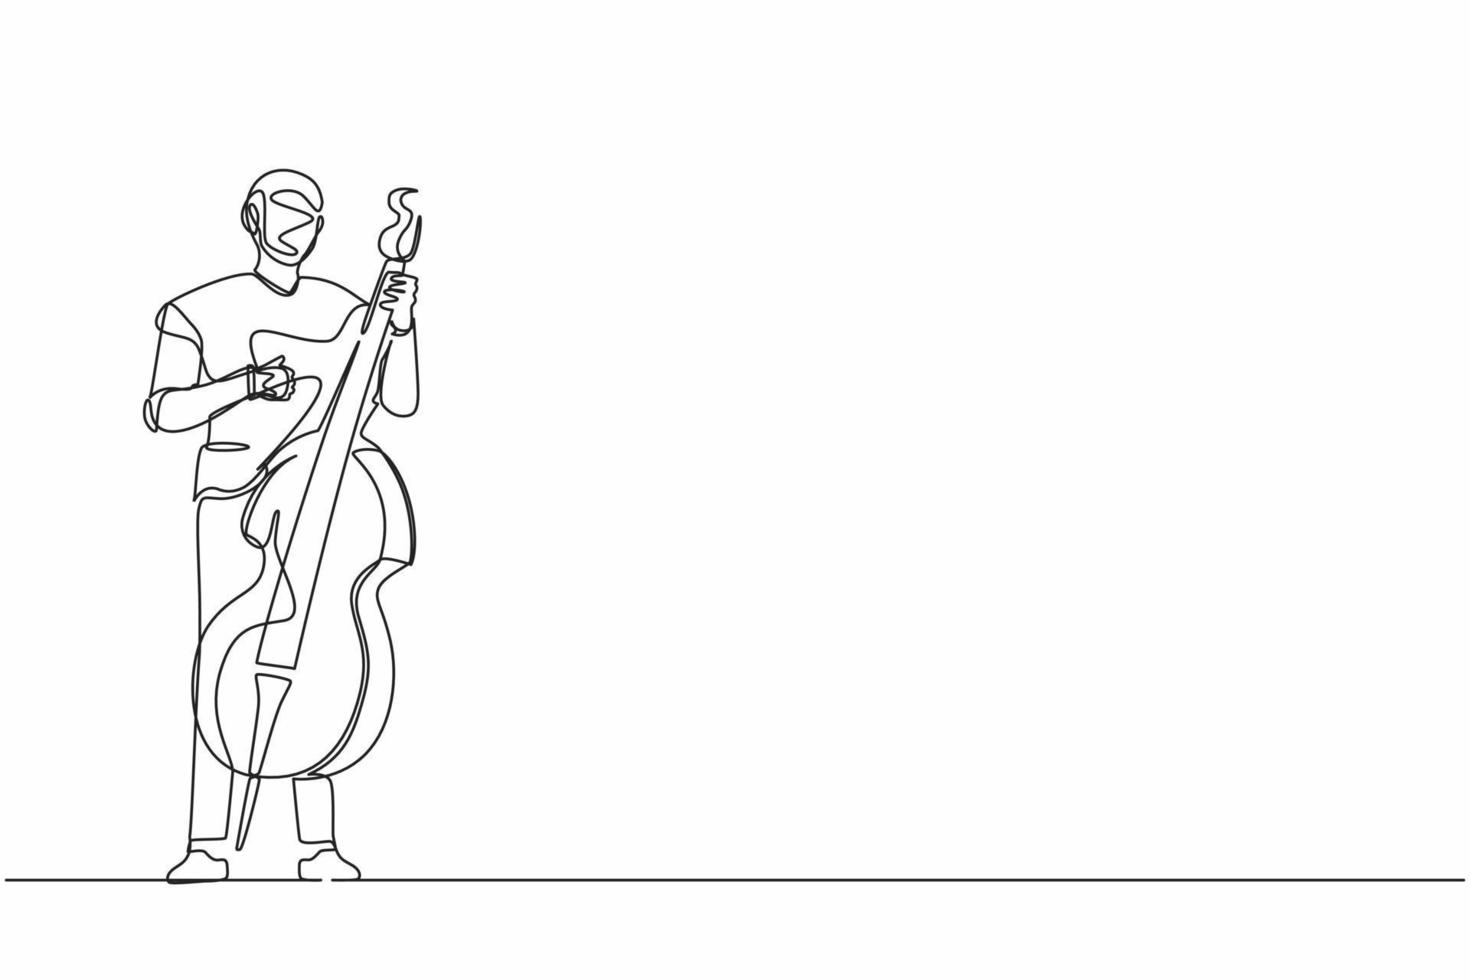 músico robô de desenho contínuo de uma linha tocando contrabaixo ou contrabaixista com o dedo. organismo cibernético robô humanóide. futuro desenvolvimento robótico. ilustração vetorial de desenho de linha única vetor